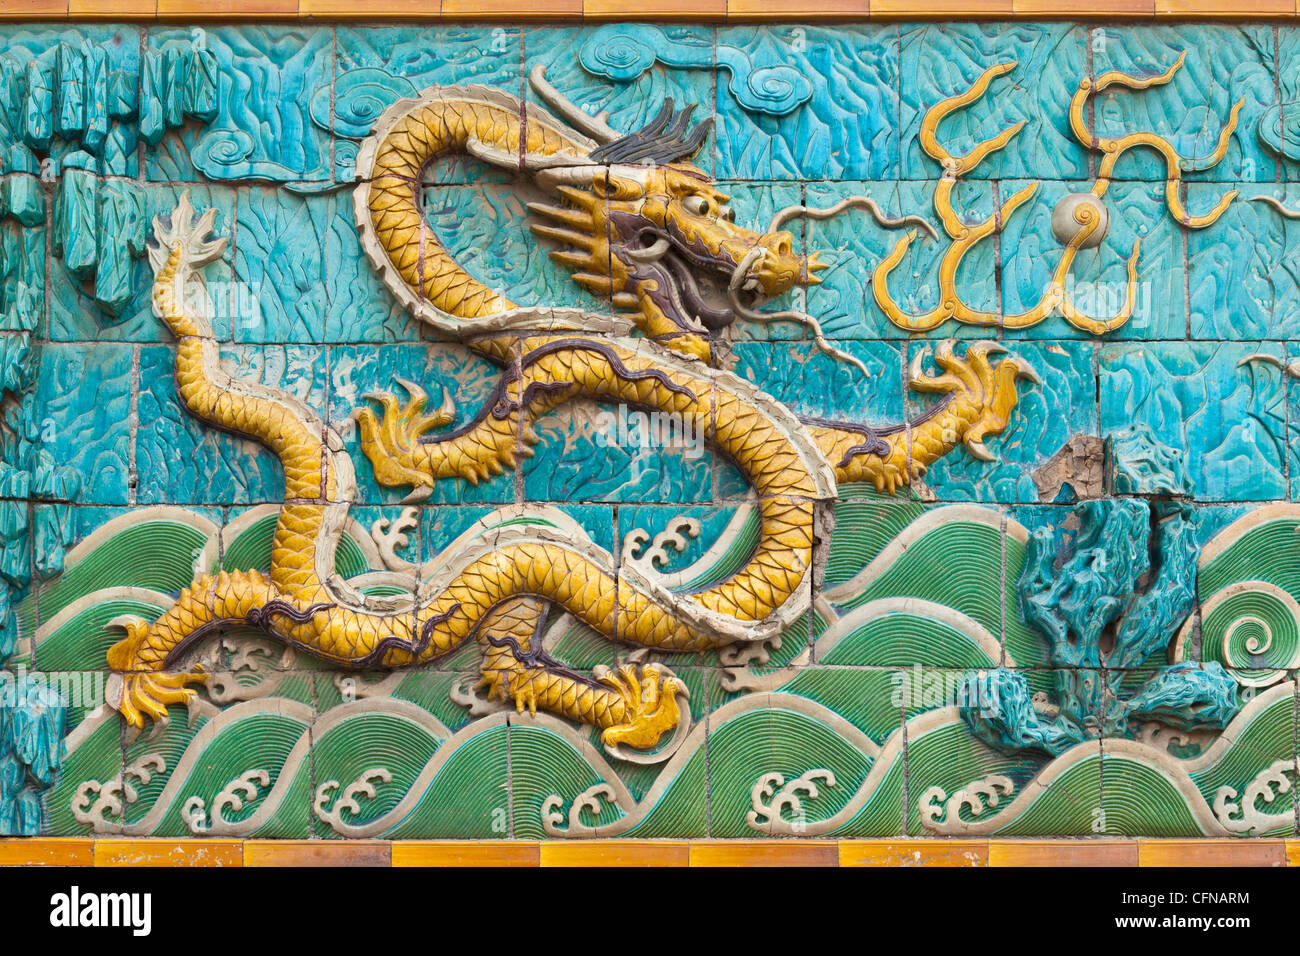 Detalle de la pantalla nueve dragones, Palacio de la tranquilidad y de la longevidad, la Ciudad Prohibida, Pekin, China, Asia Foto de stock